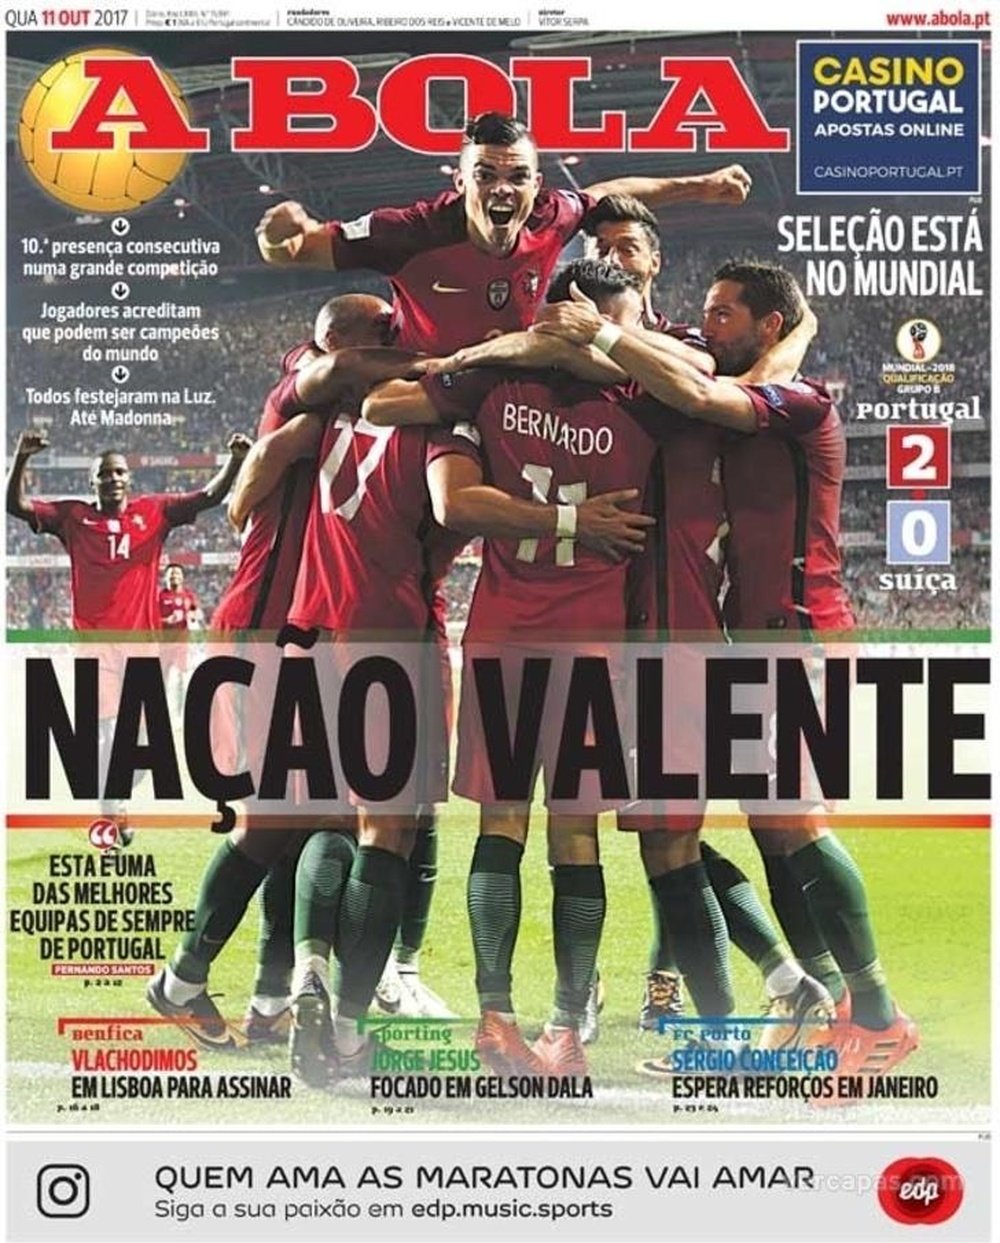 A capa do jornal 'A Bola', 11-10-2017. A Bola